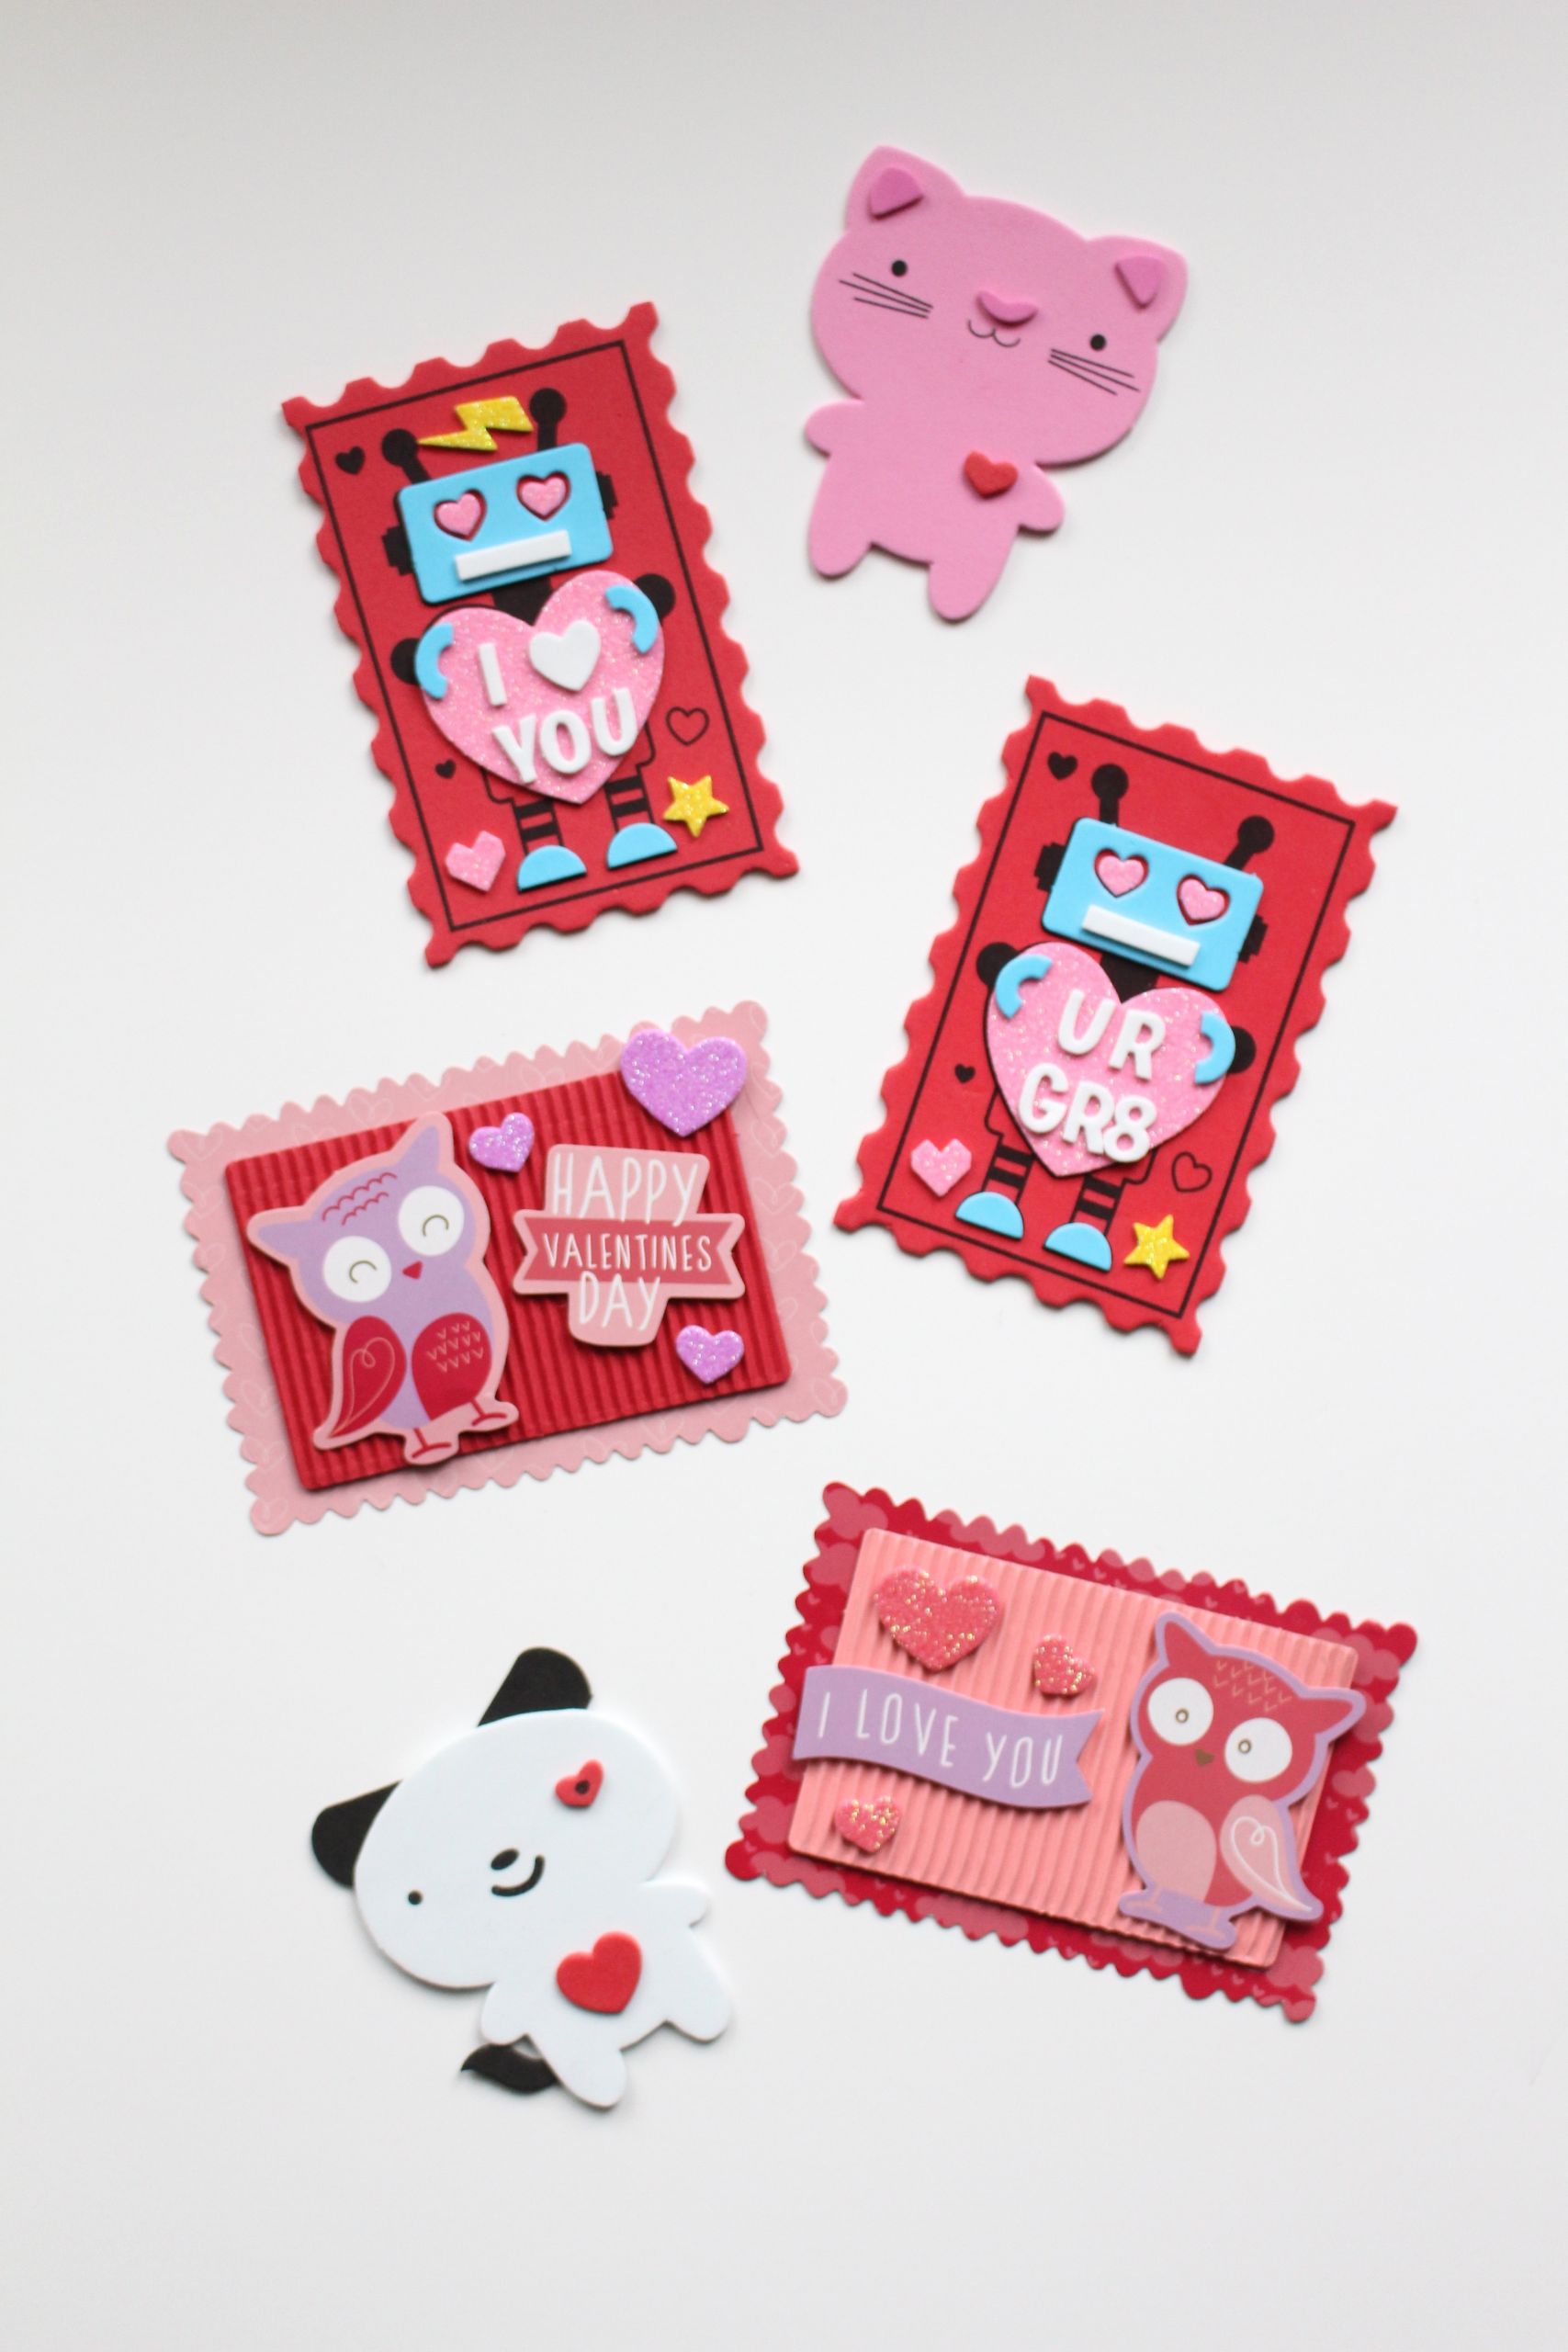 Children Valentine Gift Ideas
 DIY Valentine s Day Ideas for Kids